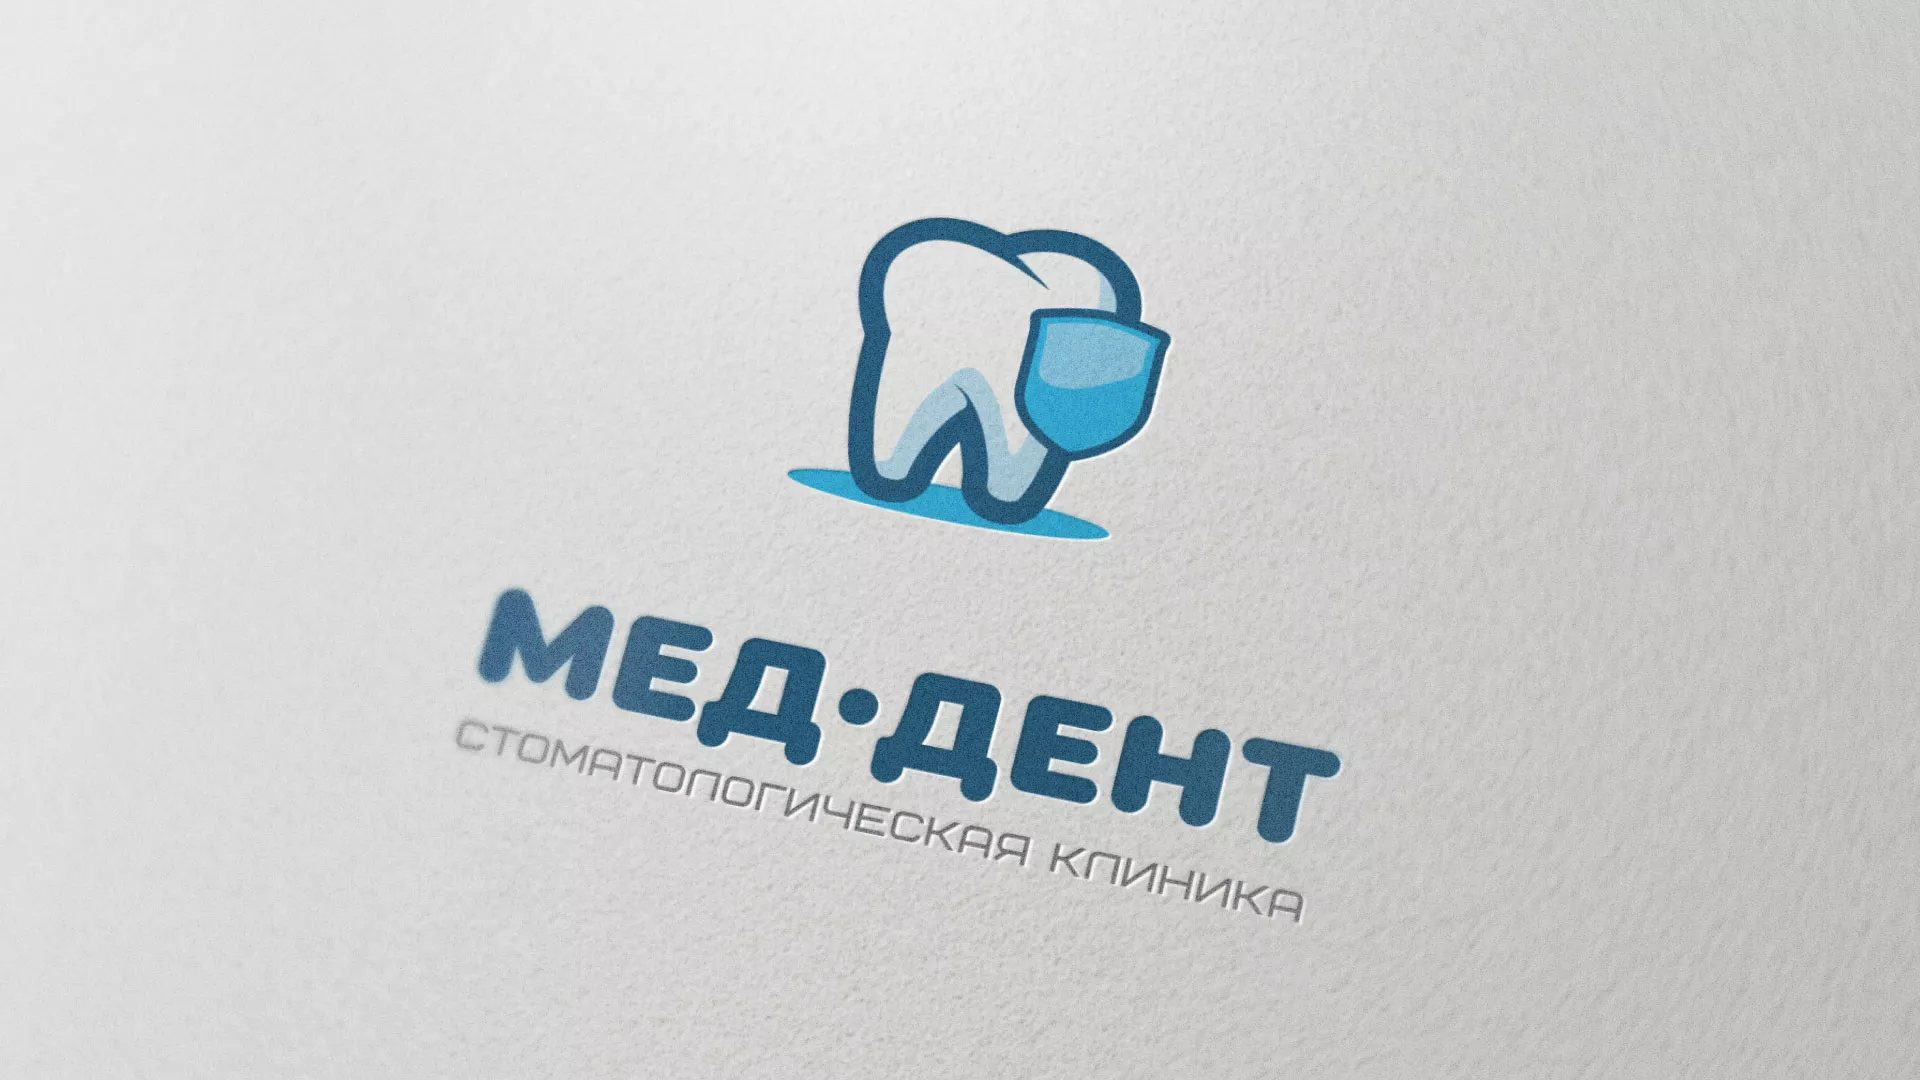 Разработка логотипа стоматологической клиники «МЕД-ДЕНТ» в Кеми